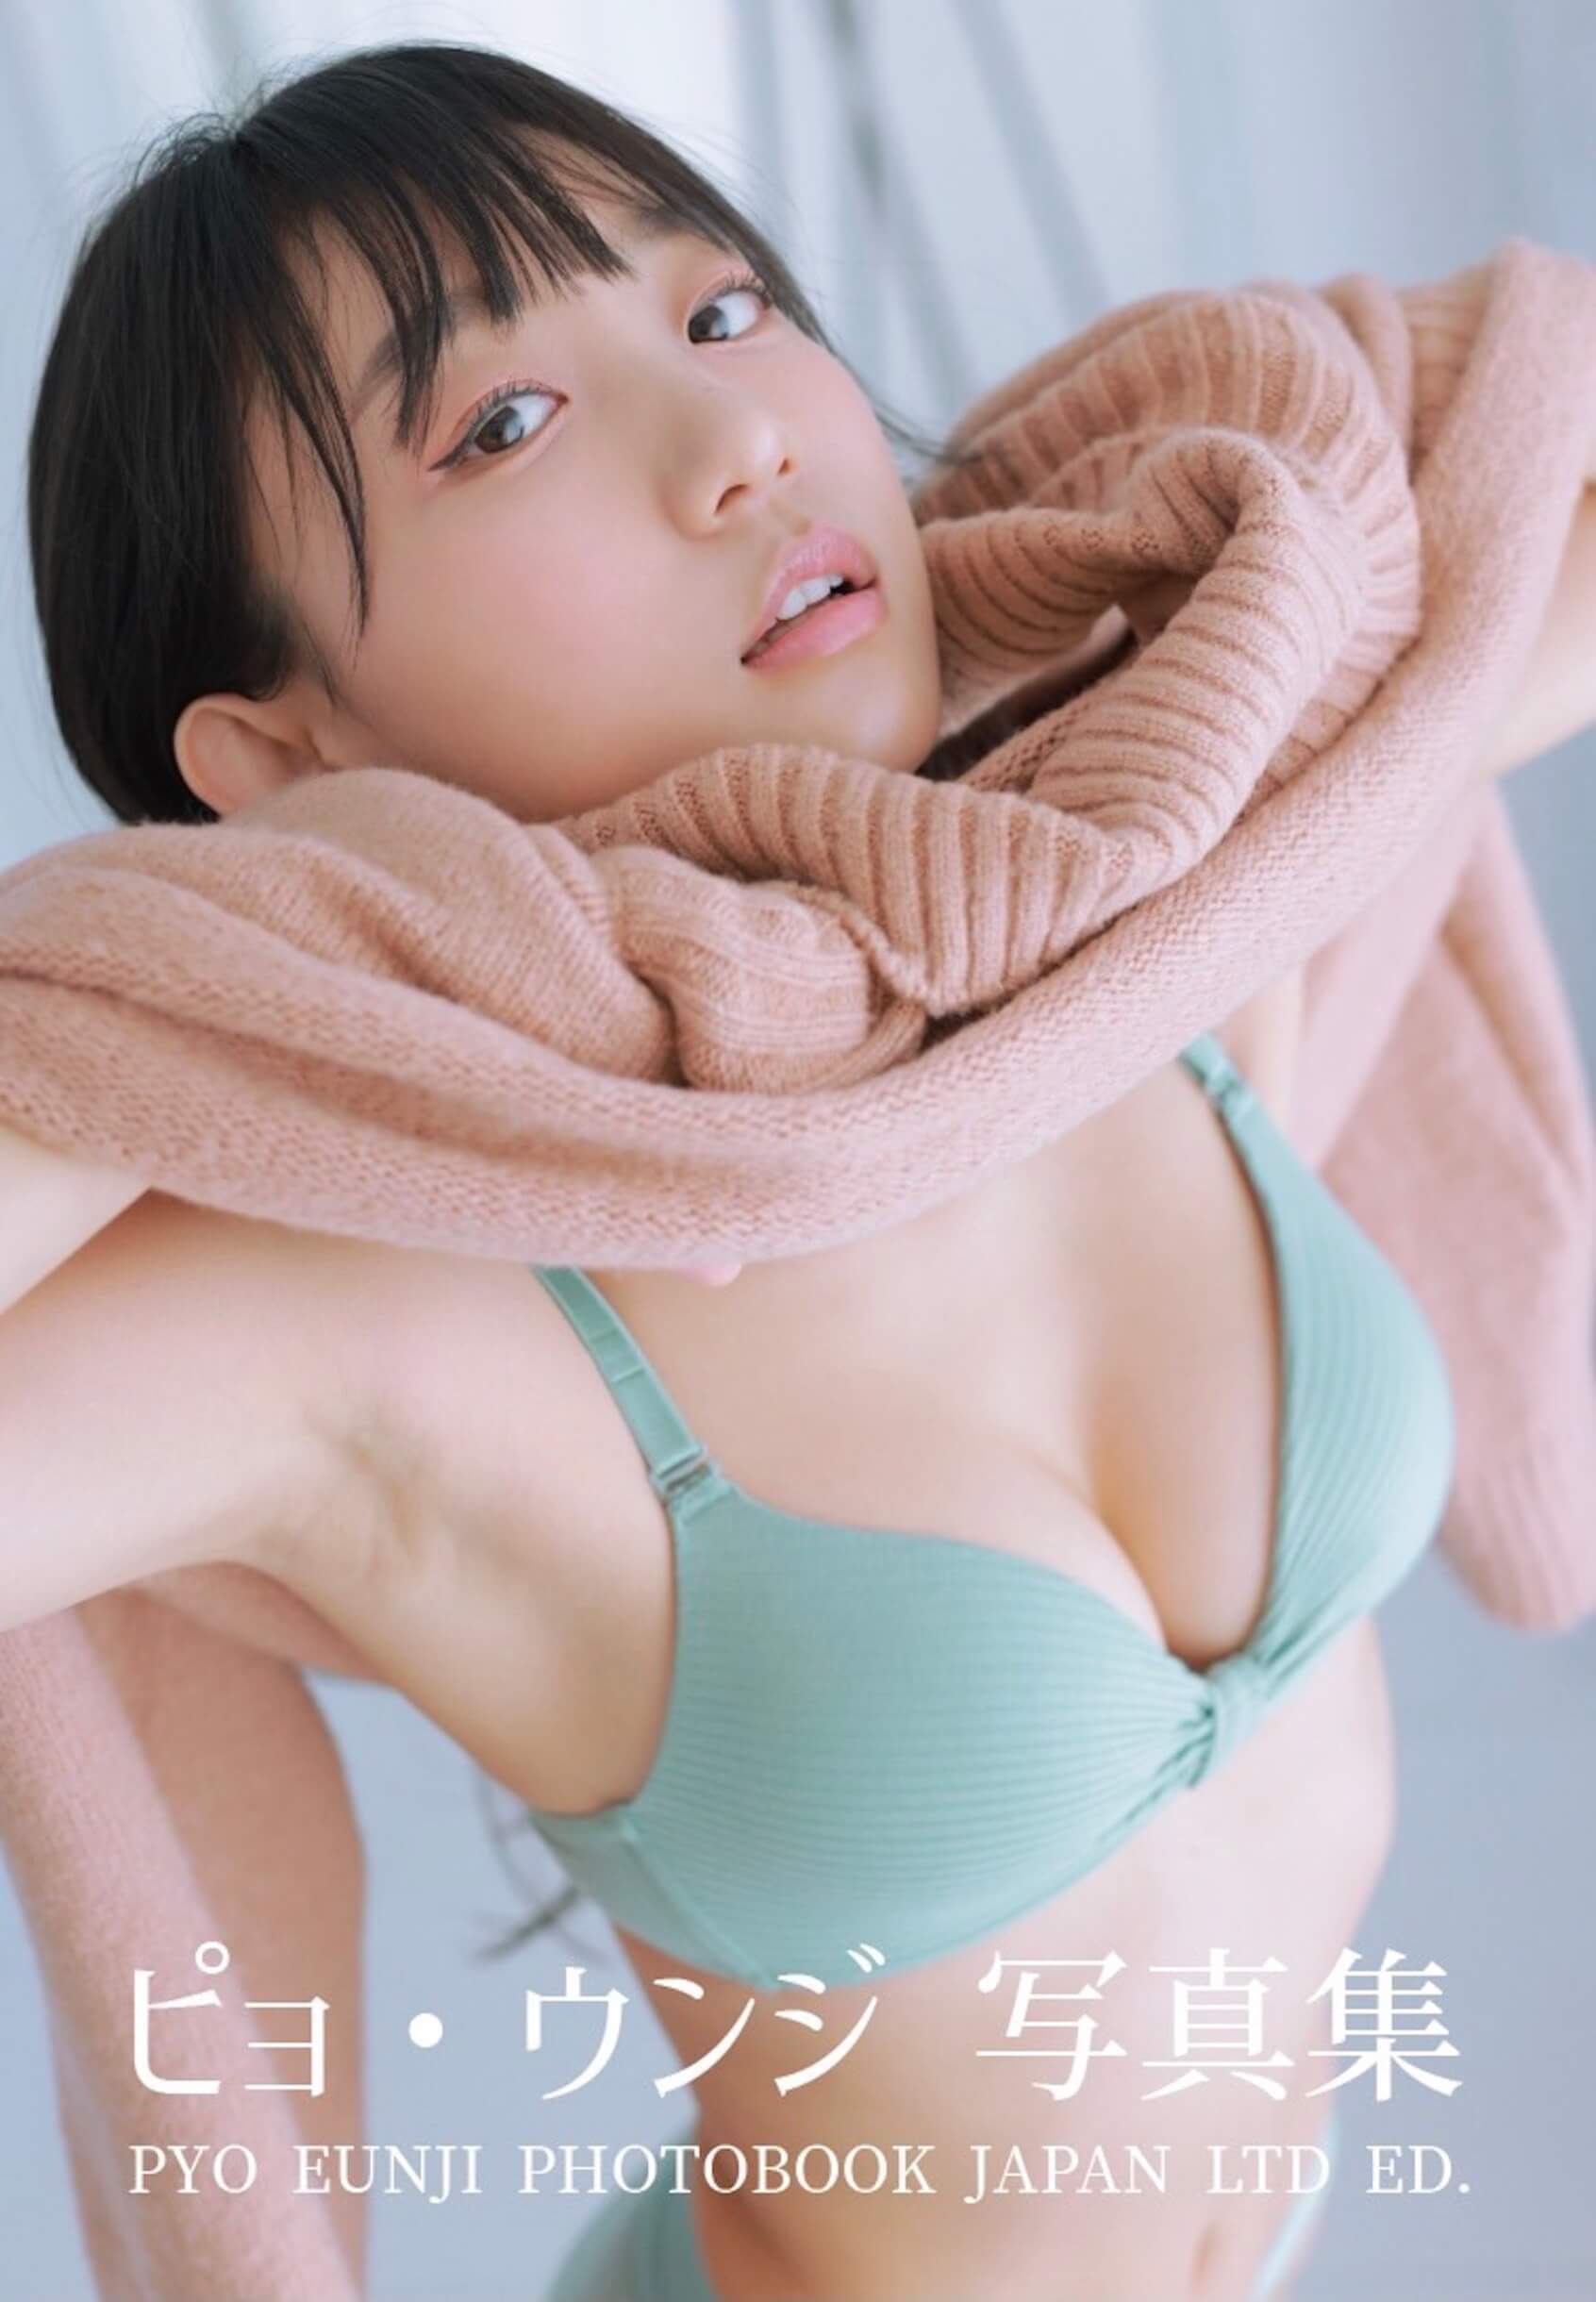 童顔・美ボディで海外ファンも魅了！韓国モデル・YouTuberのピョ・ウンジが写真集を発売決定 art220310_pyo_eunji-01